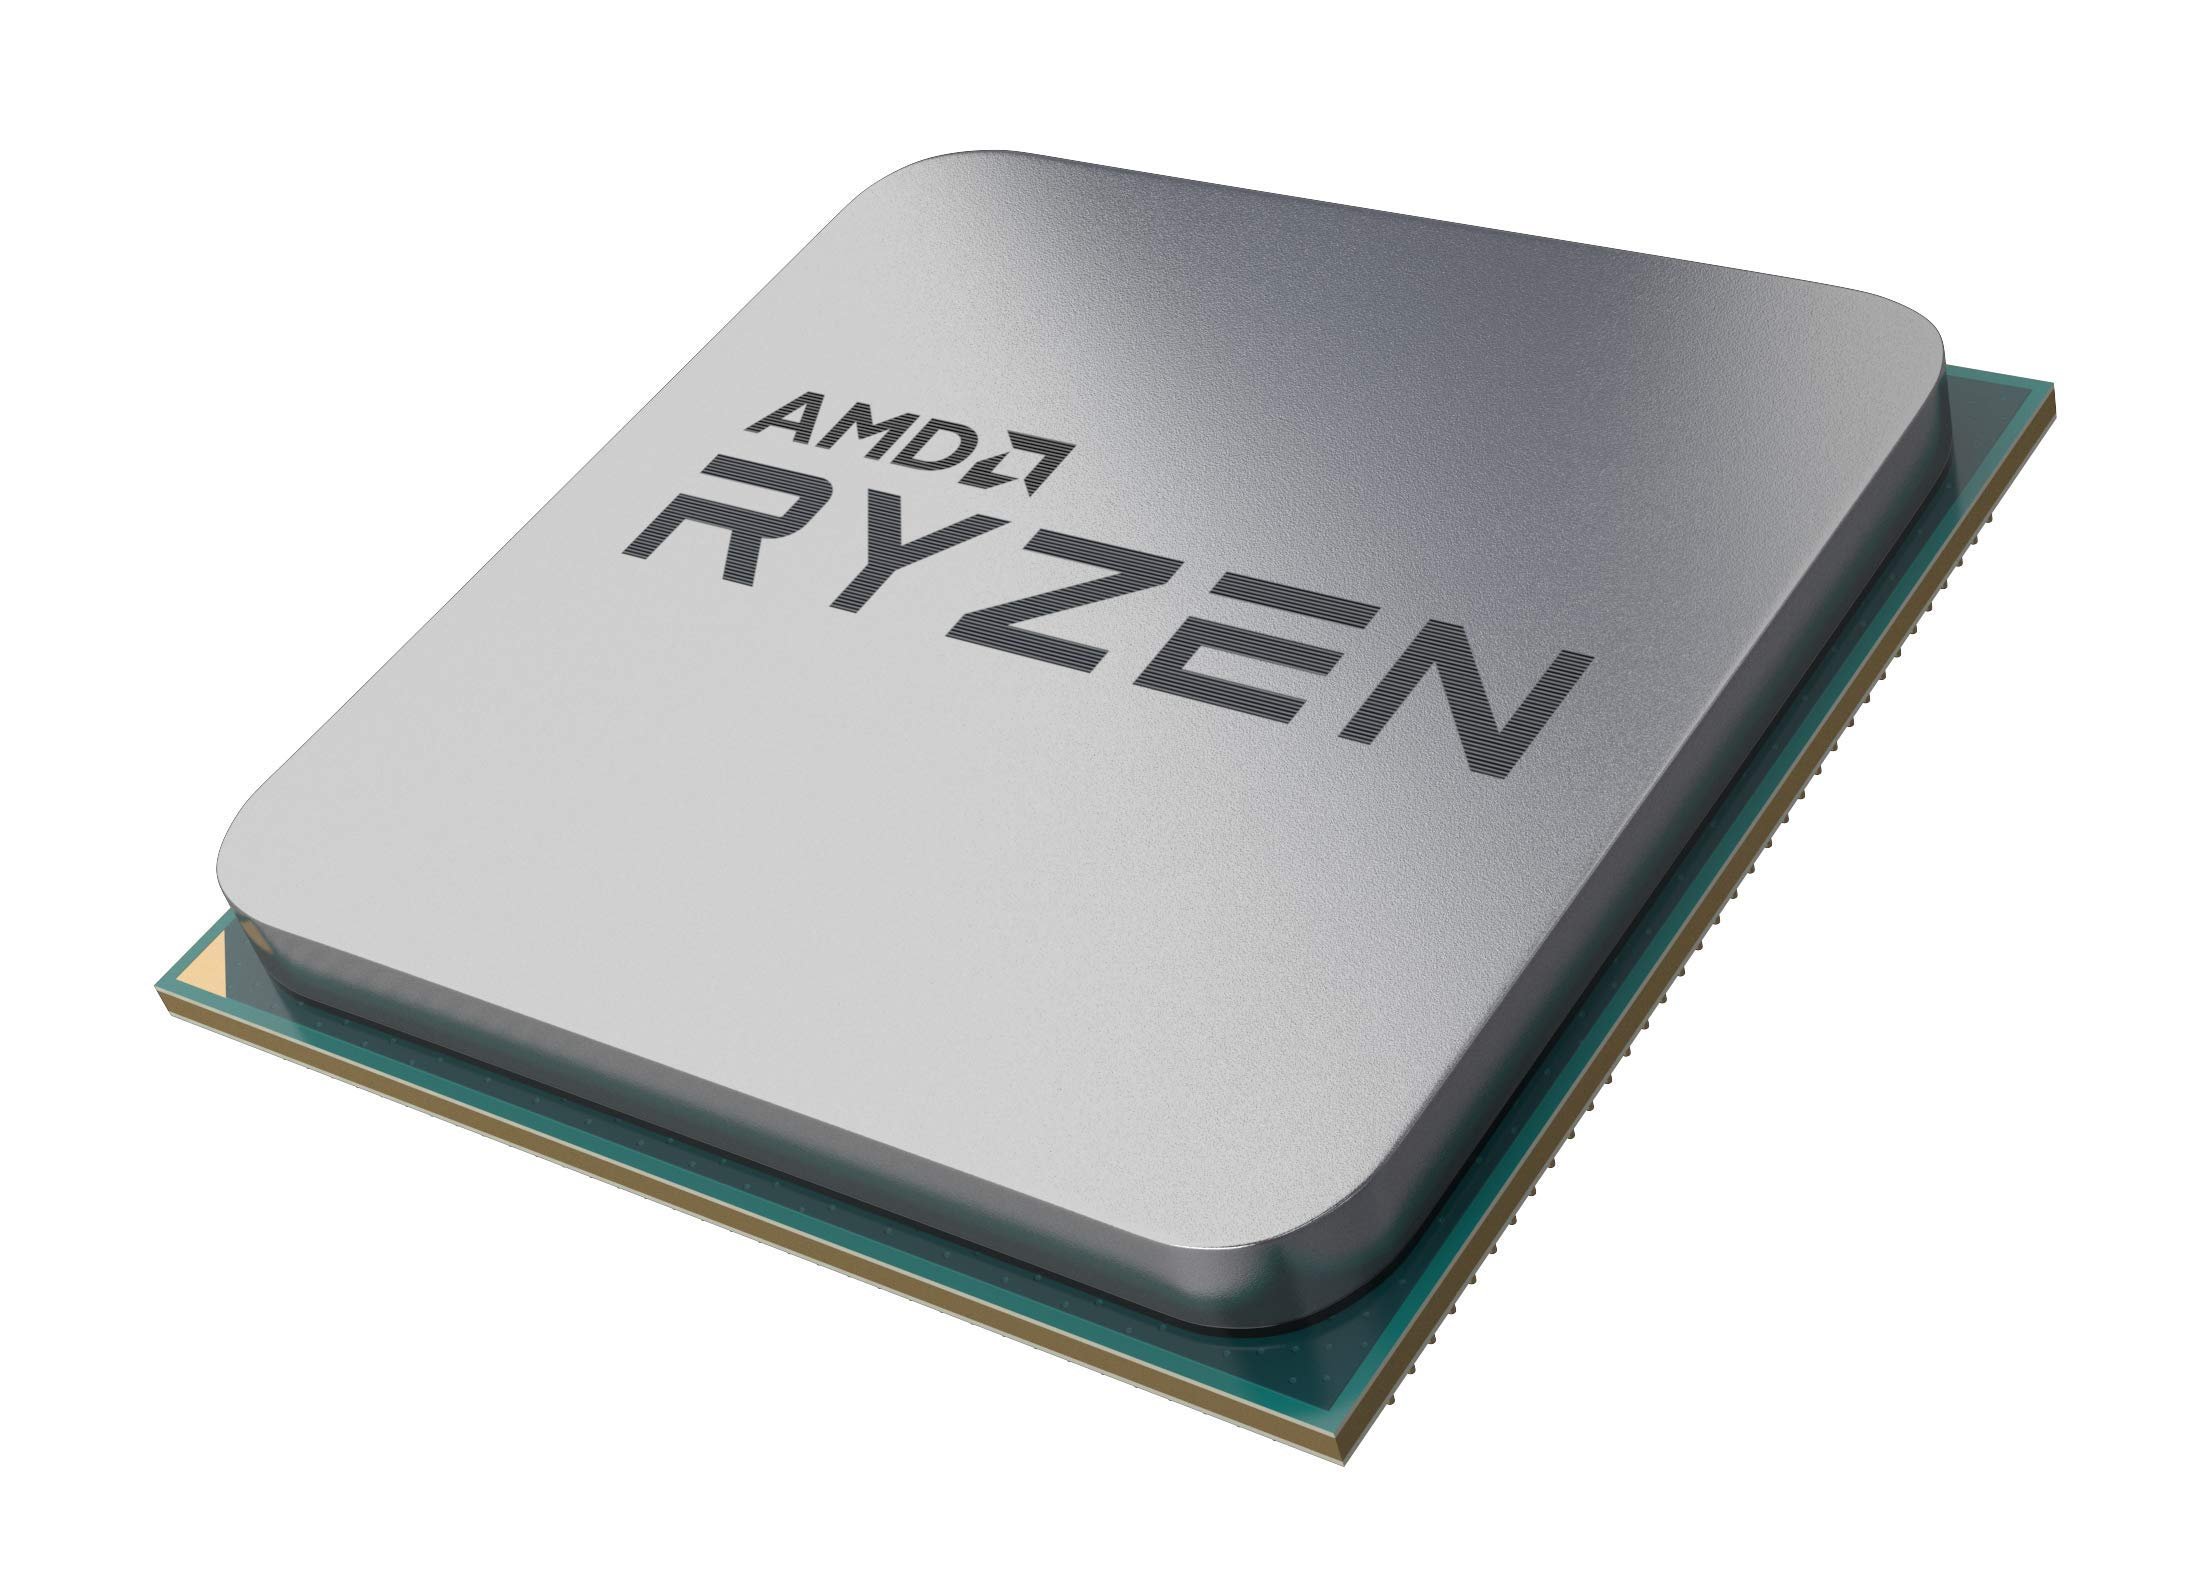 More information about "PC RYZEN (RYZEN 5 2600/ASROCK A320M-HDV/16 gb DDR4/R7 370 4gb/M2 512 gb)"